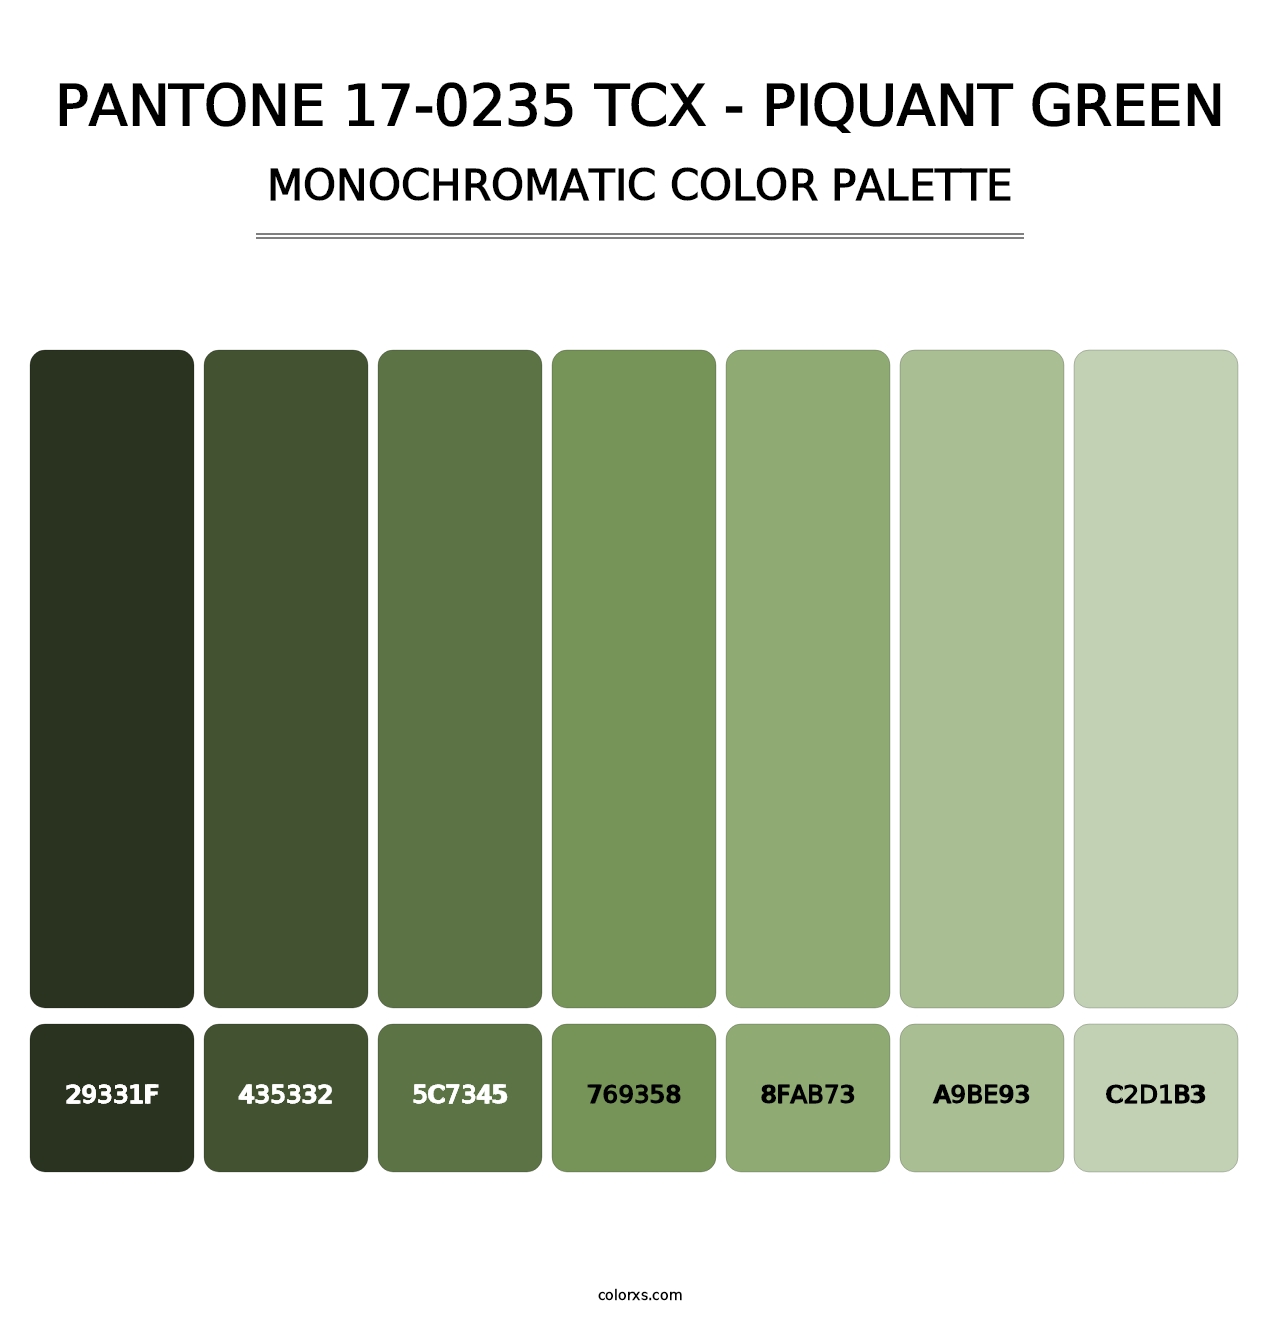 PANTONE 17-0235 TCX - Piquant Green - Monochromatic Color Palette